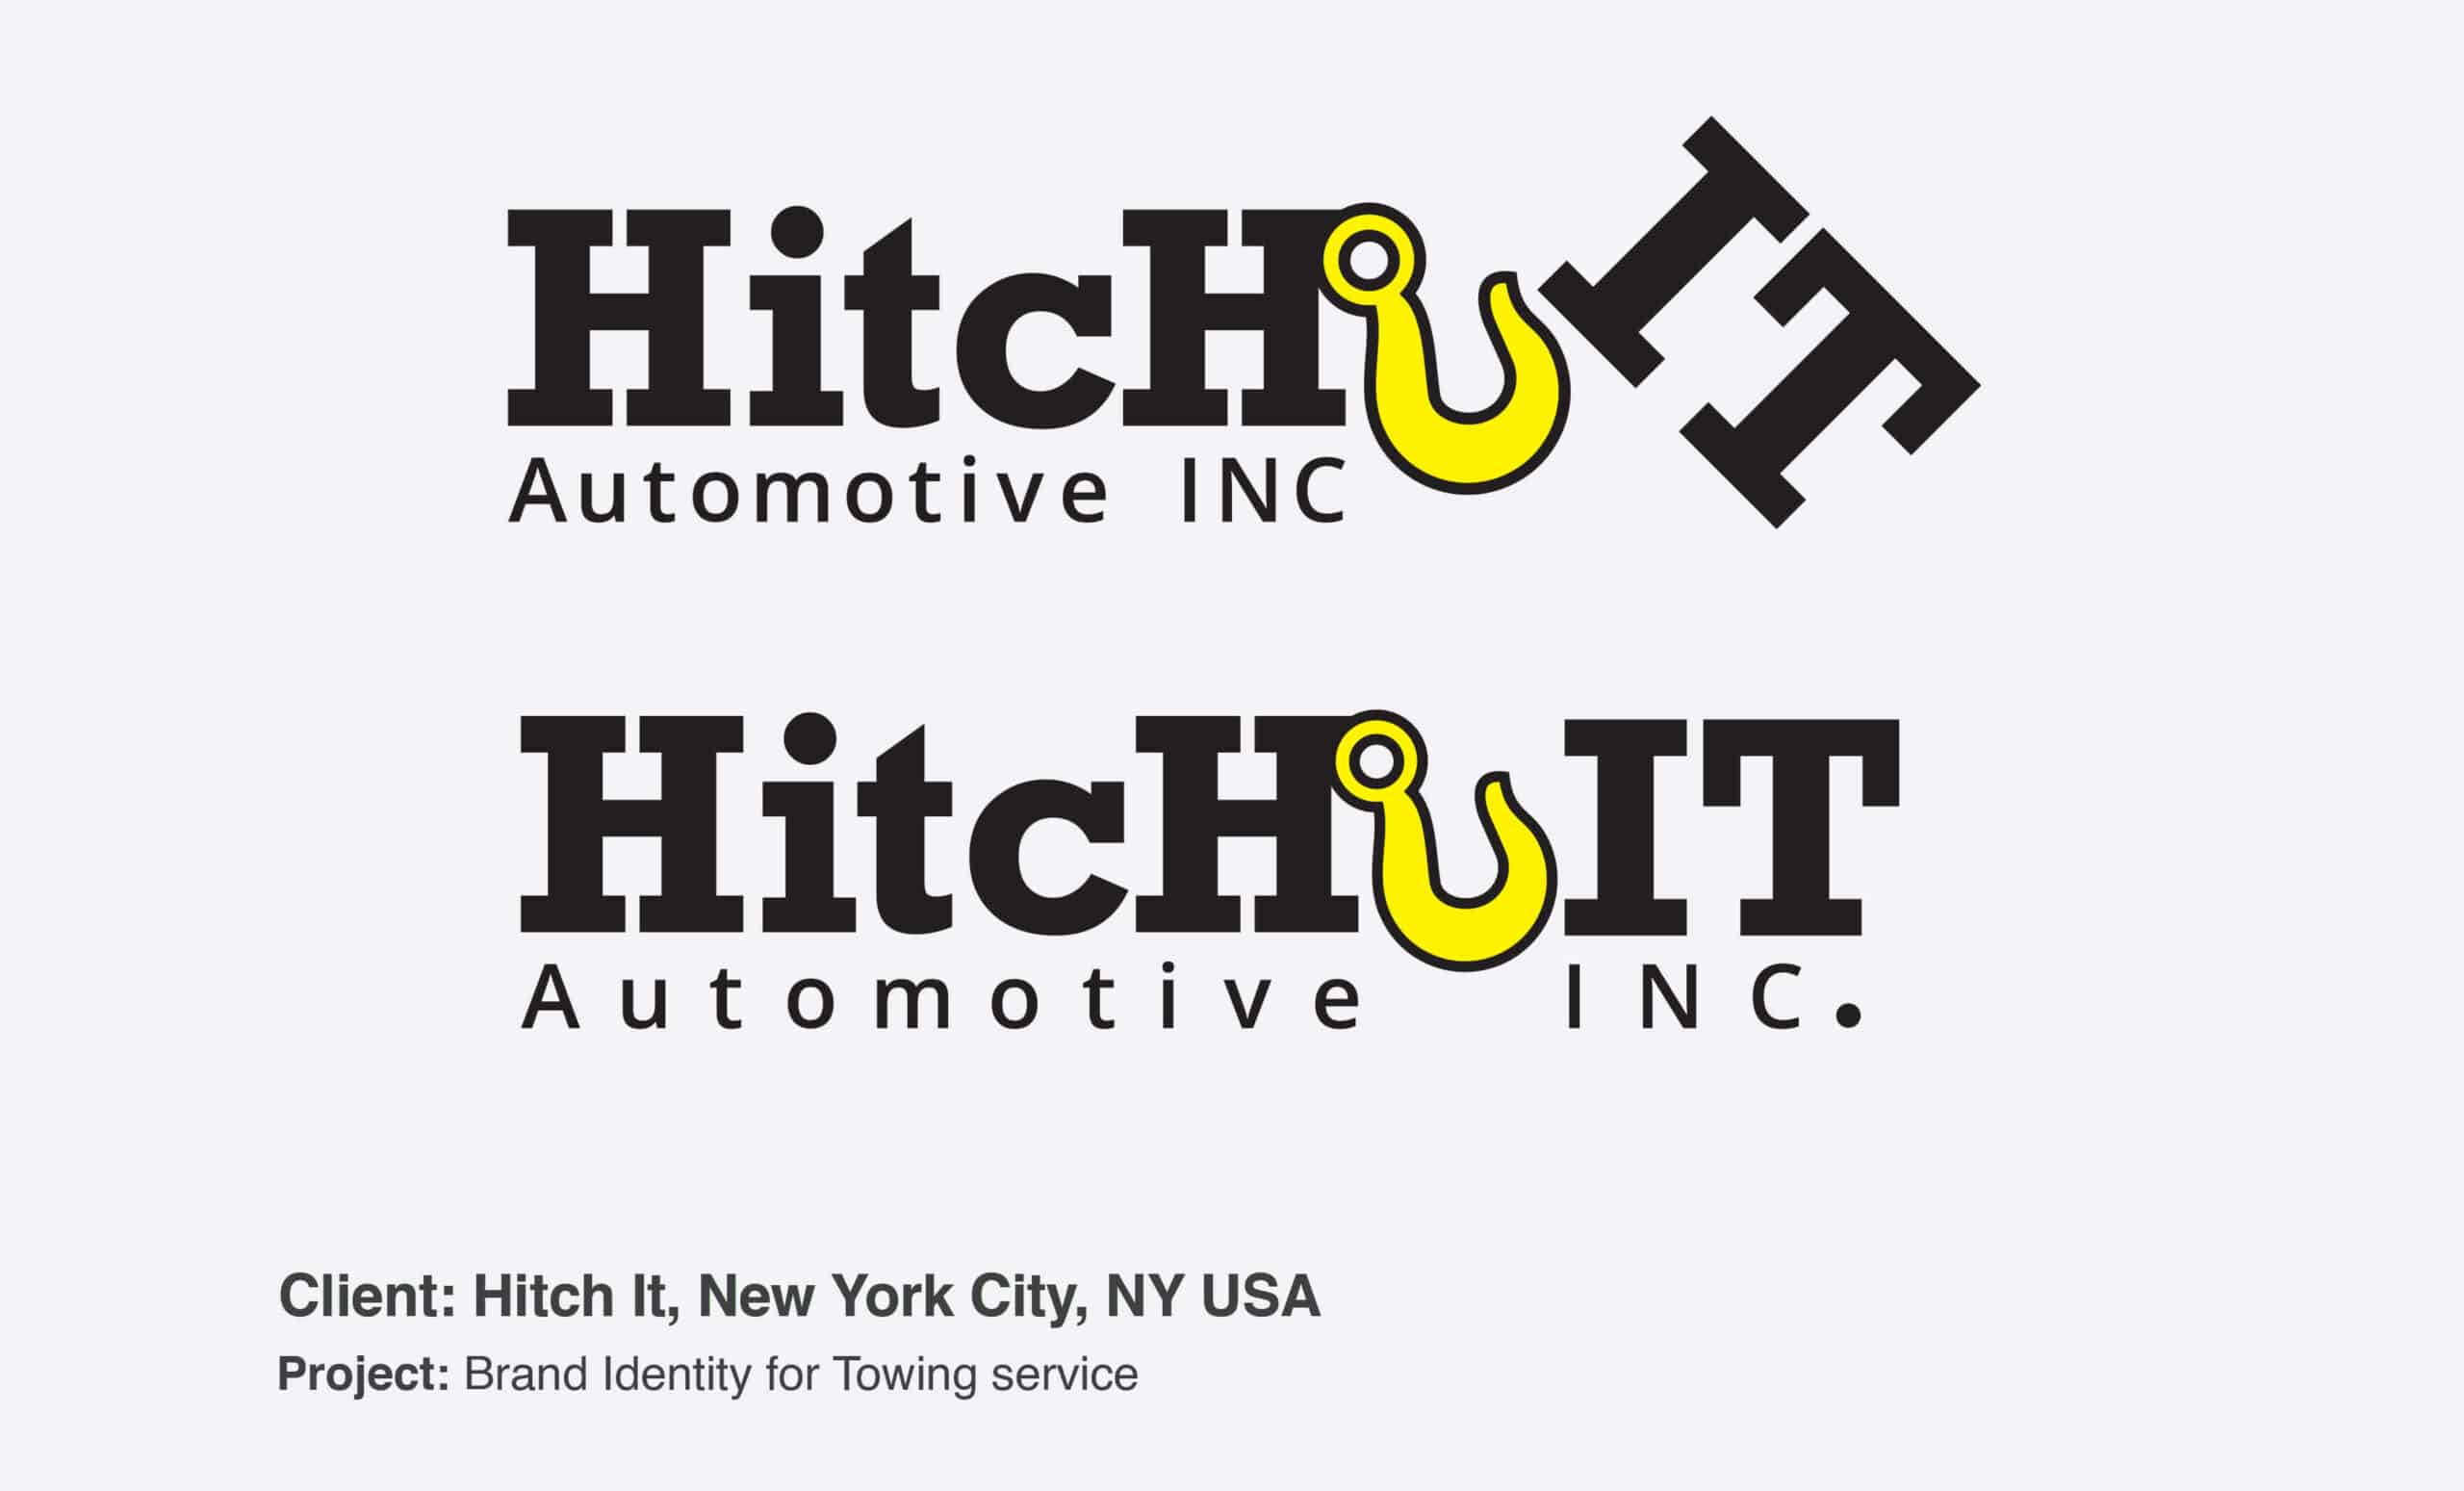 Our Client: Hitch It - Automotive Inc.